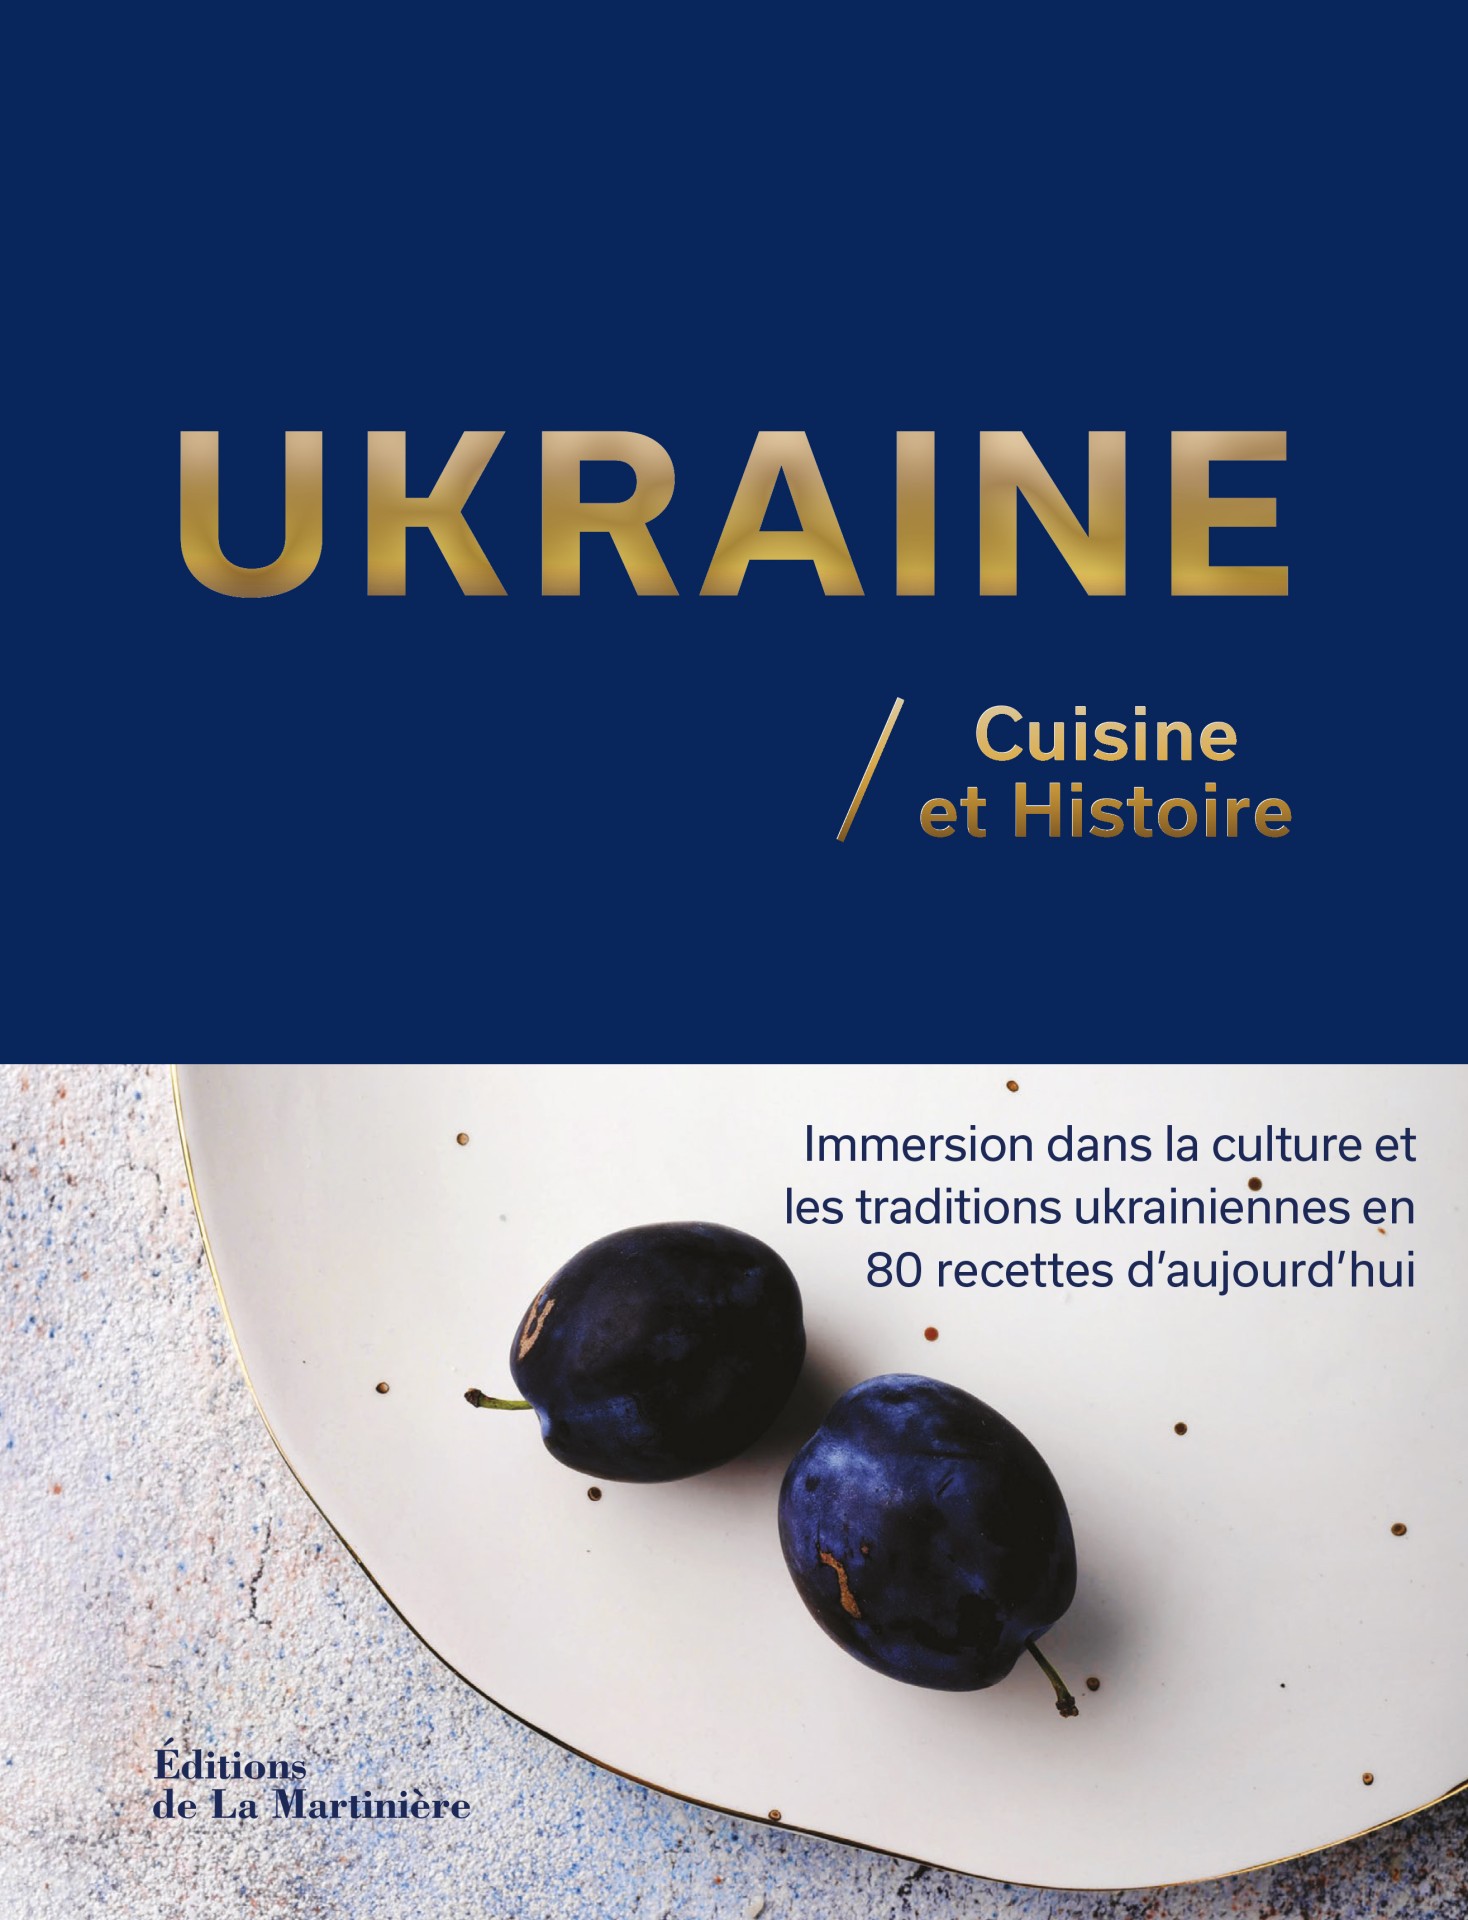 Retrouver l’Ukraine terre de tourisme gastronomique…